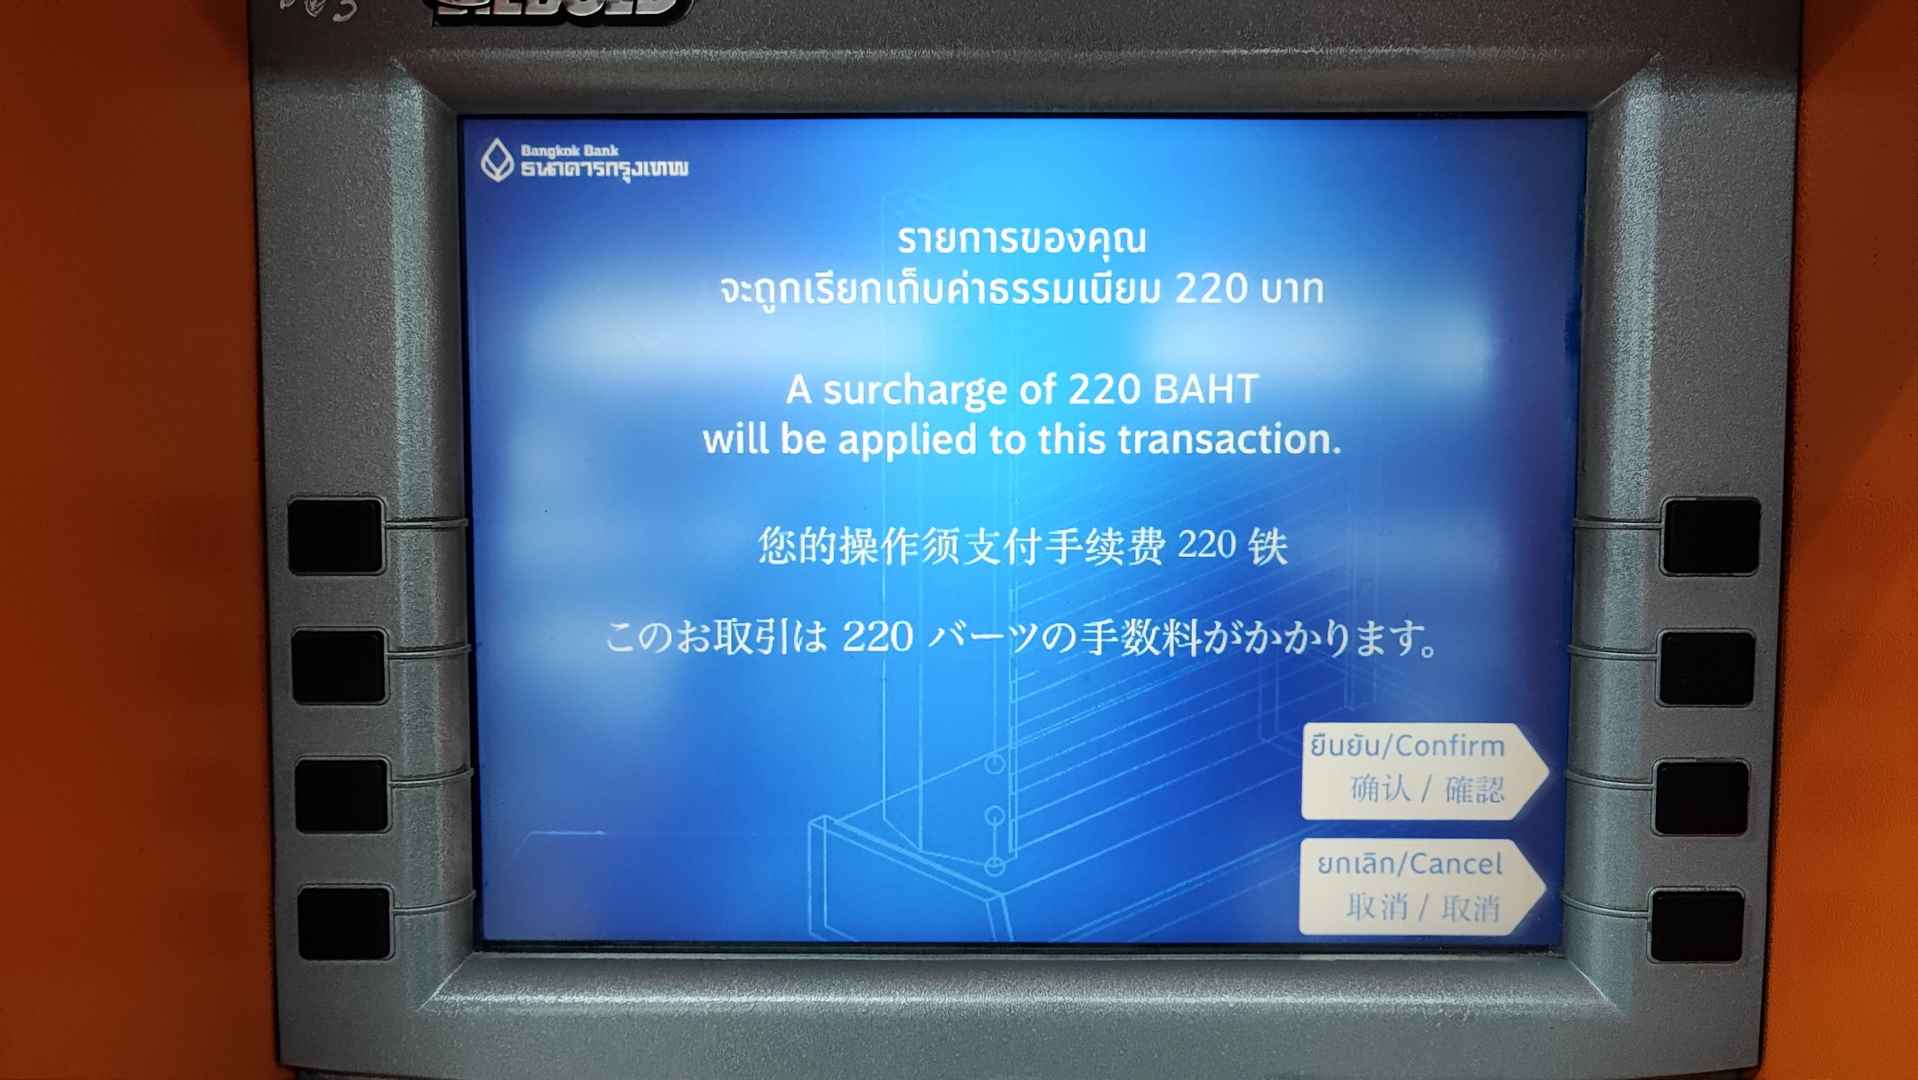 Grafika z nazwą bankomatu